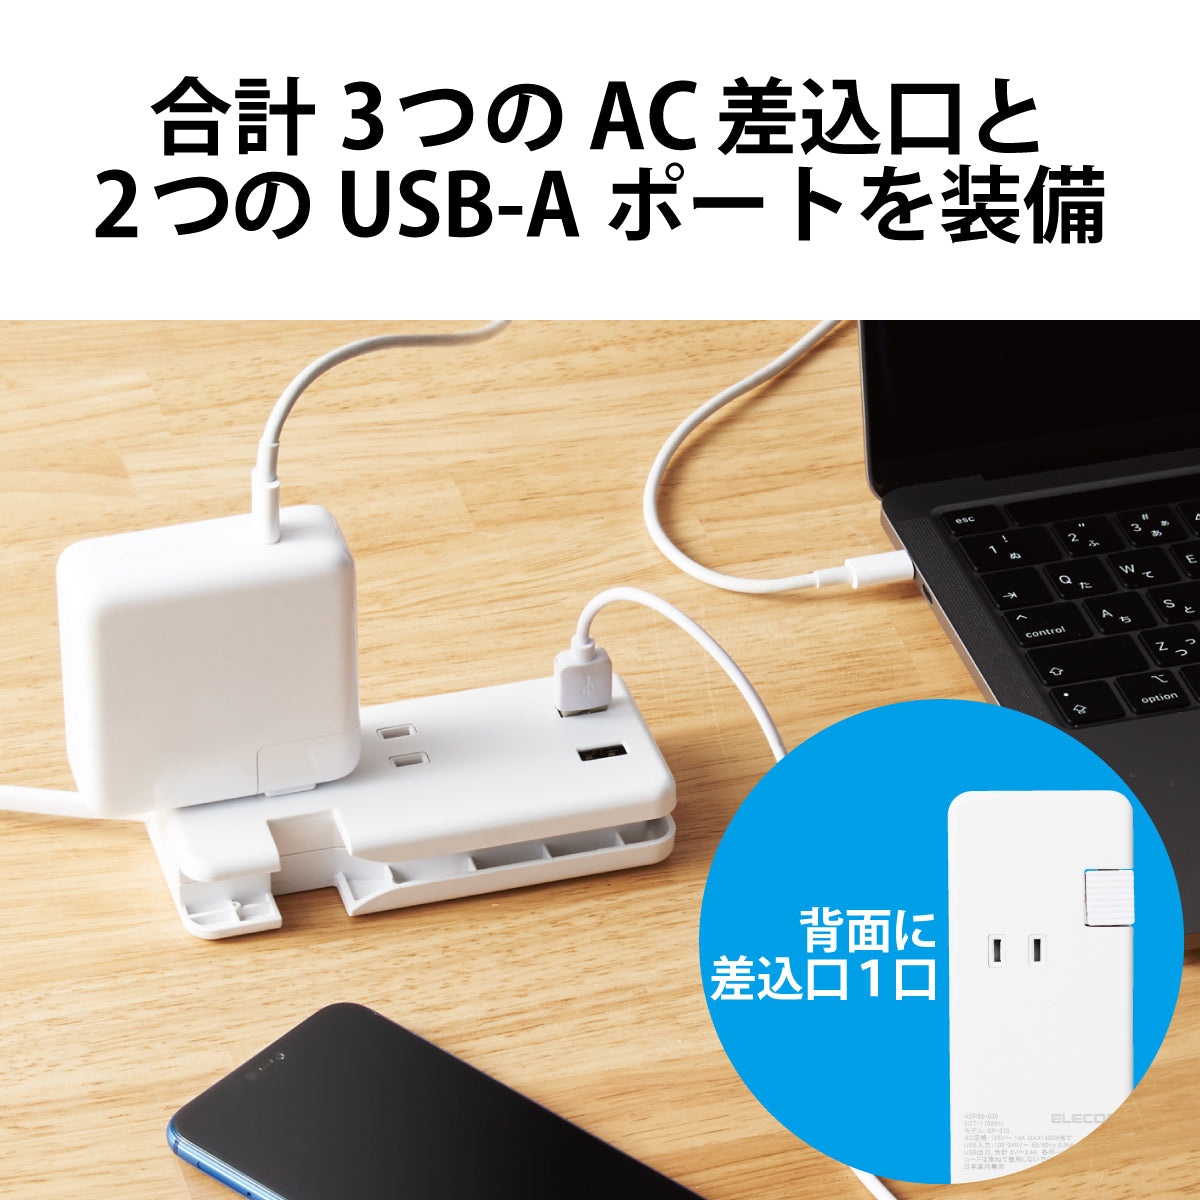 エレコム 電源タップ USBタップ ケーブル収納 12W USB-Aメス2ポート 15W USB-Aメス1ポート Type-C(USB-C)1ポート